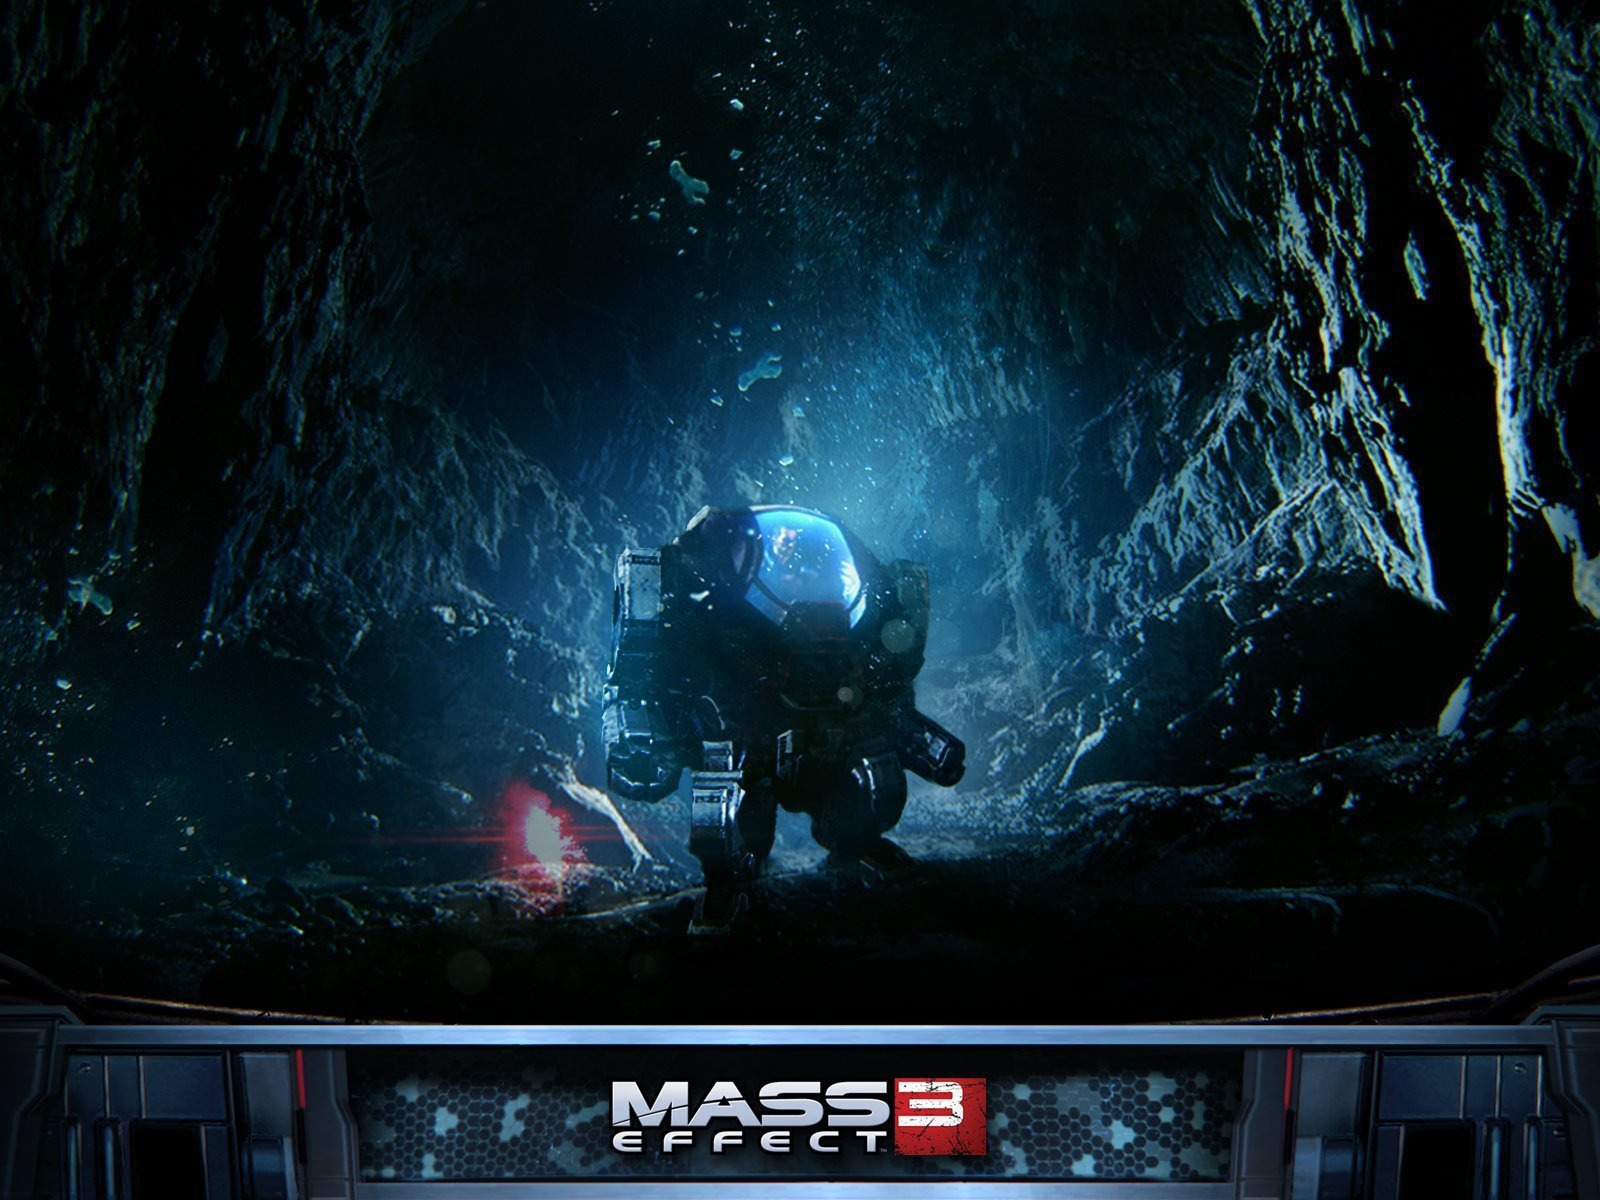 Mass Effect 3 Robot for 1600 x 1200 resolution